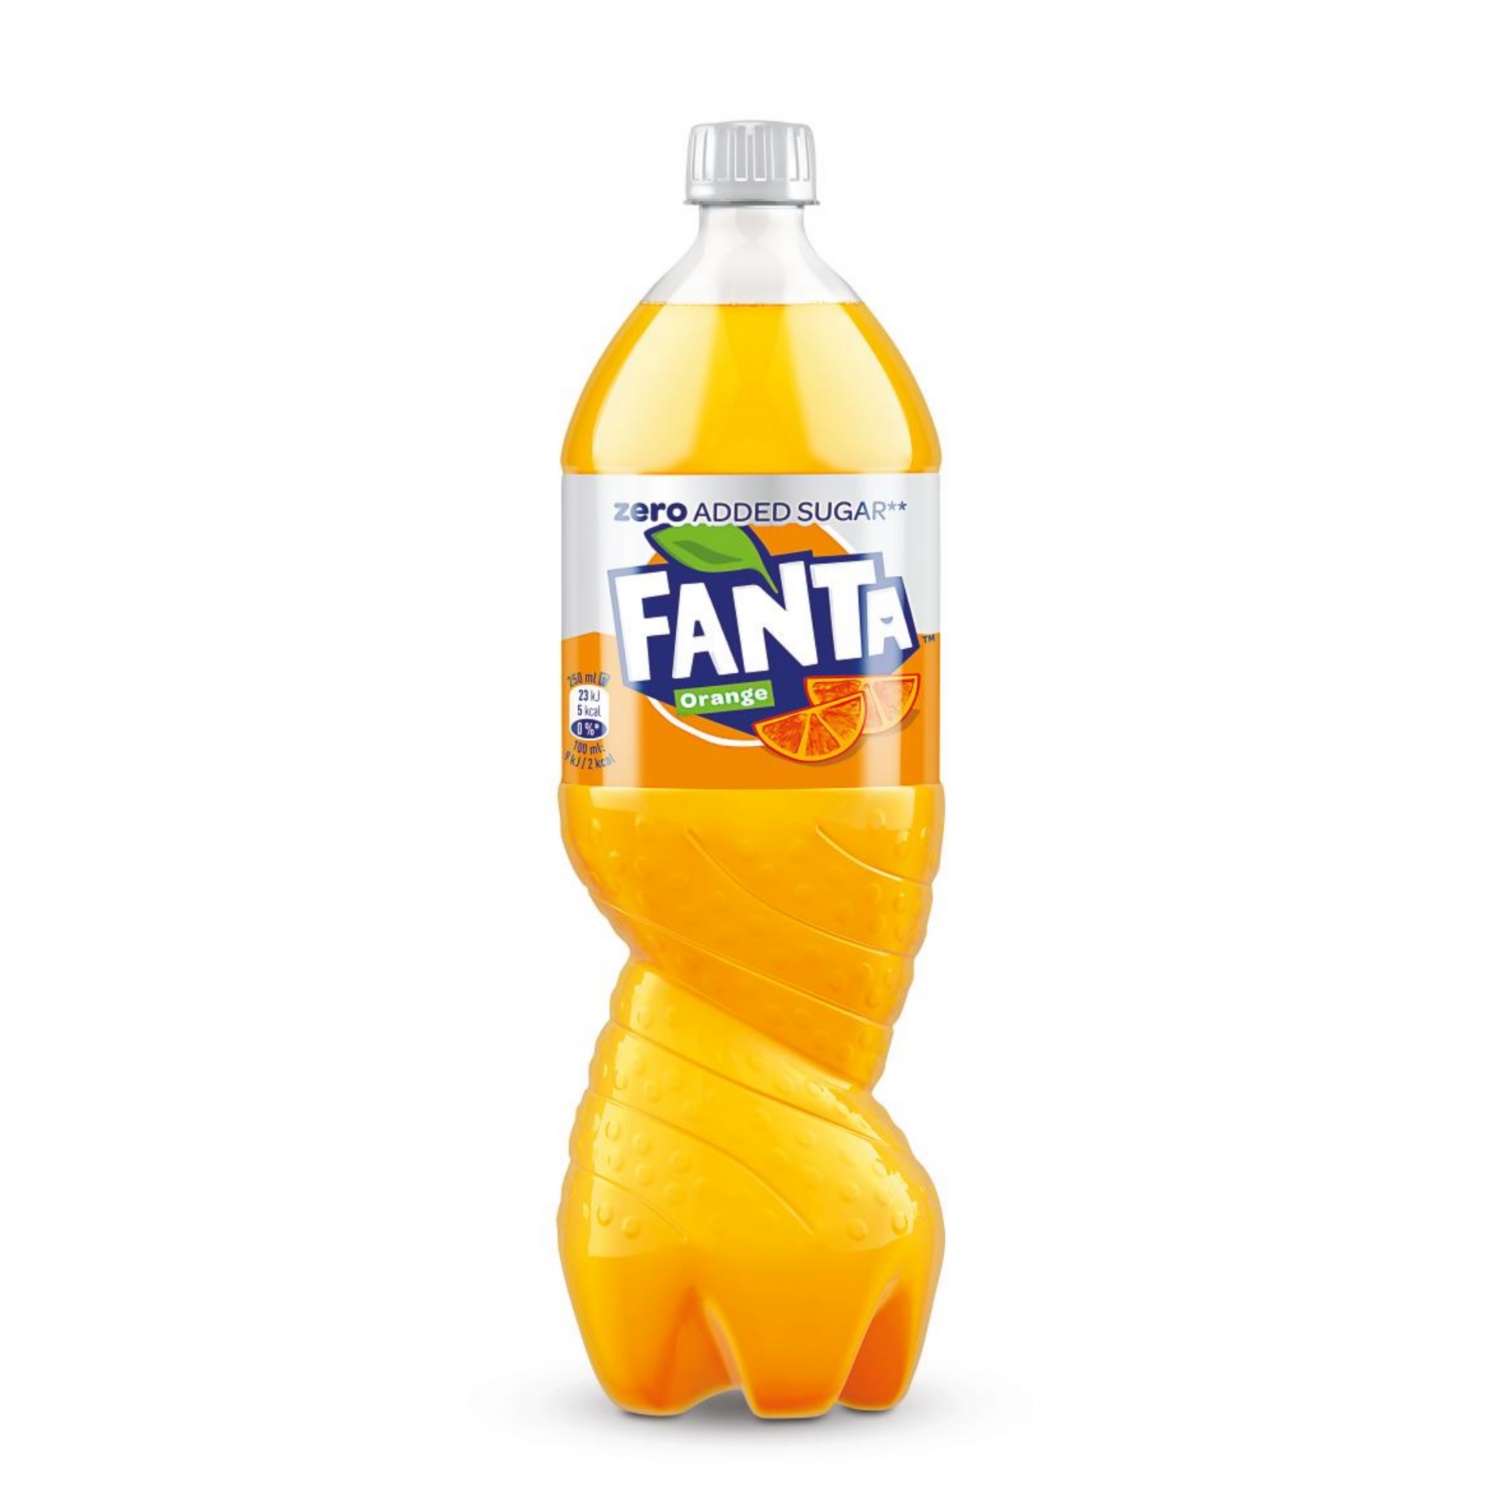 FANTA Orange Zero